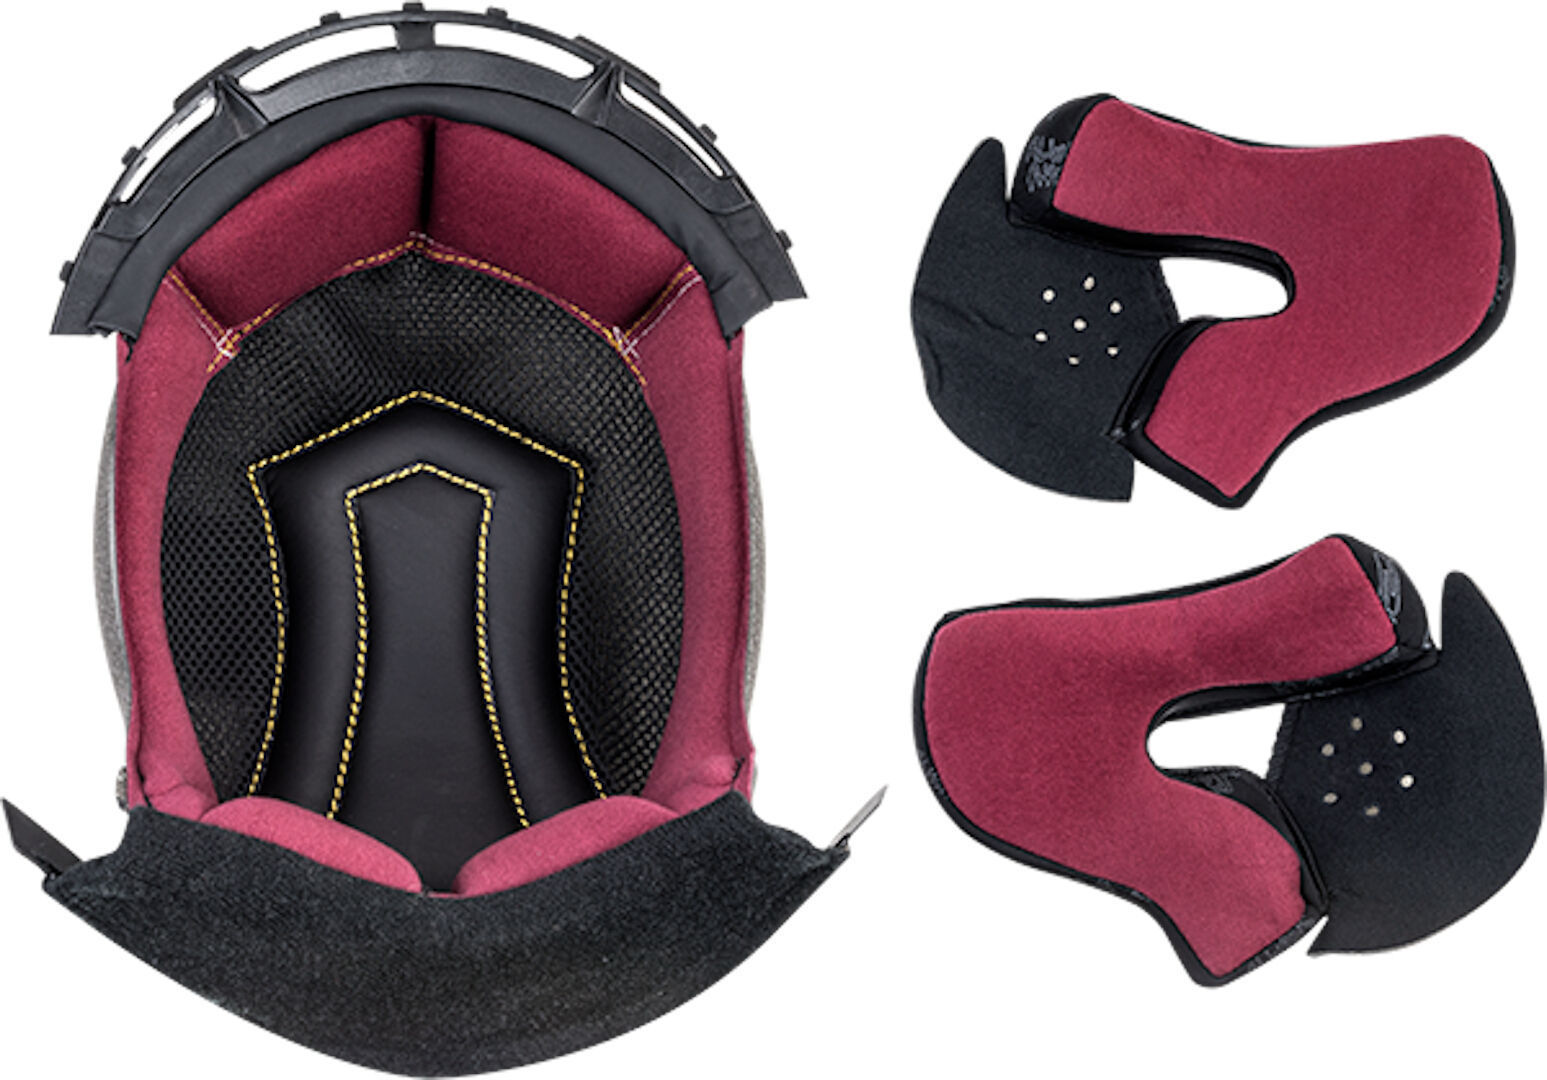 Подкладка LS2 FF313 Vortex внутренняя для шлема высококачественная подкладка для шлема сверхлегкая красная съемная подкладка для шлема подкладка для шлема 27 шт компл